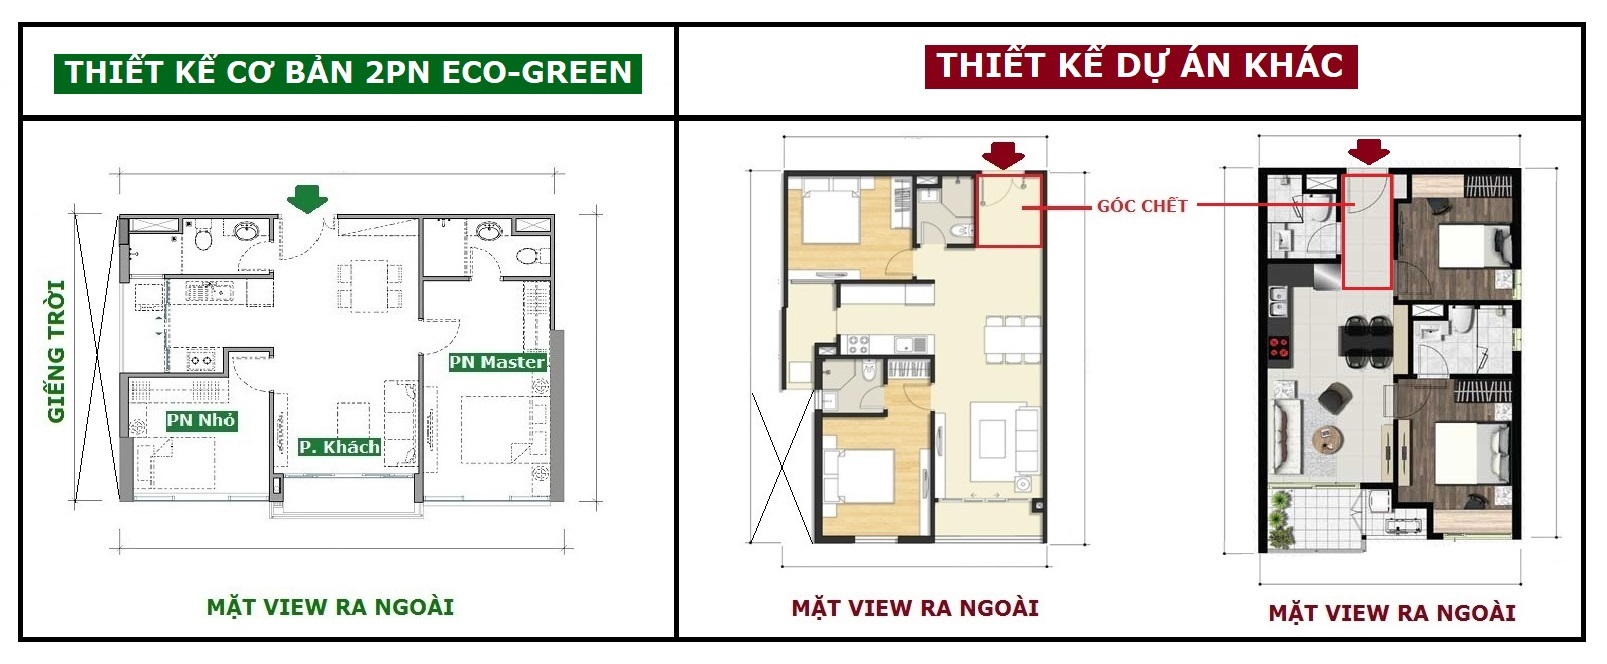 thiet-ke-2pn-eco-green